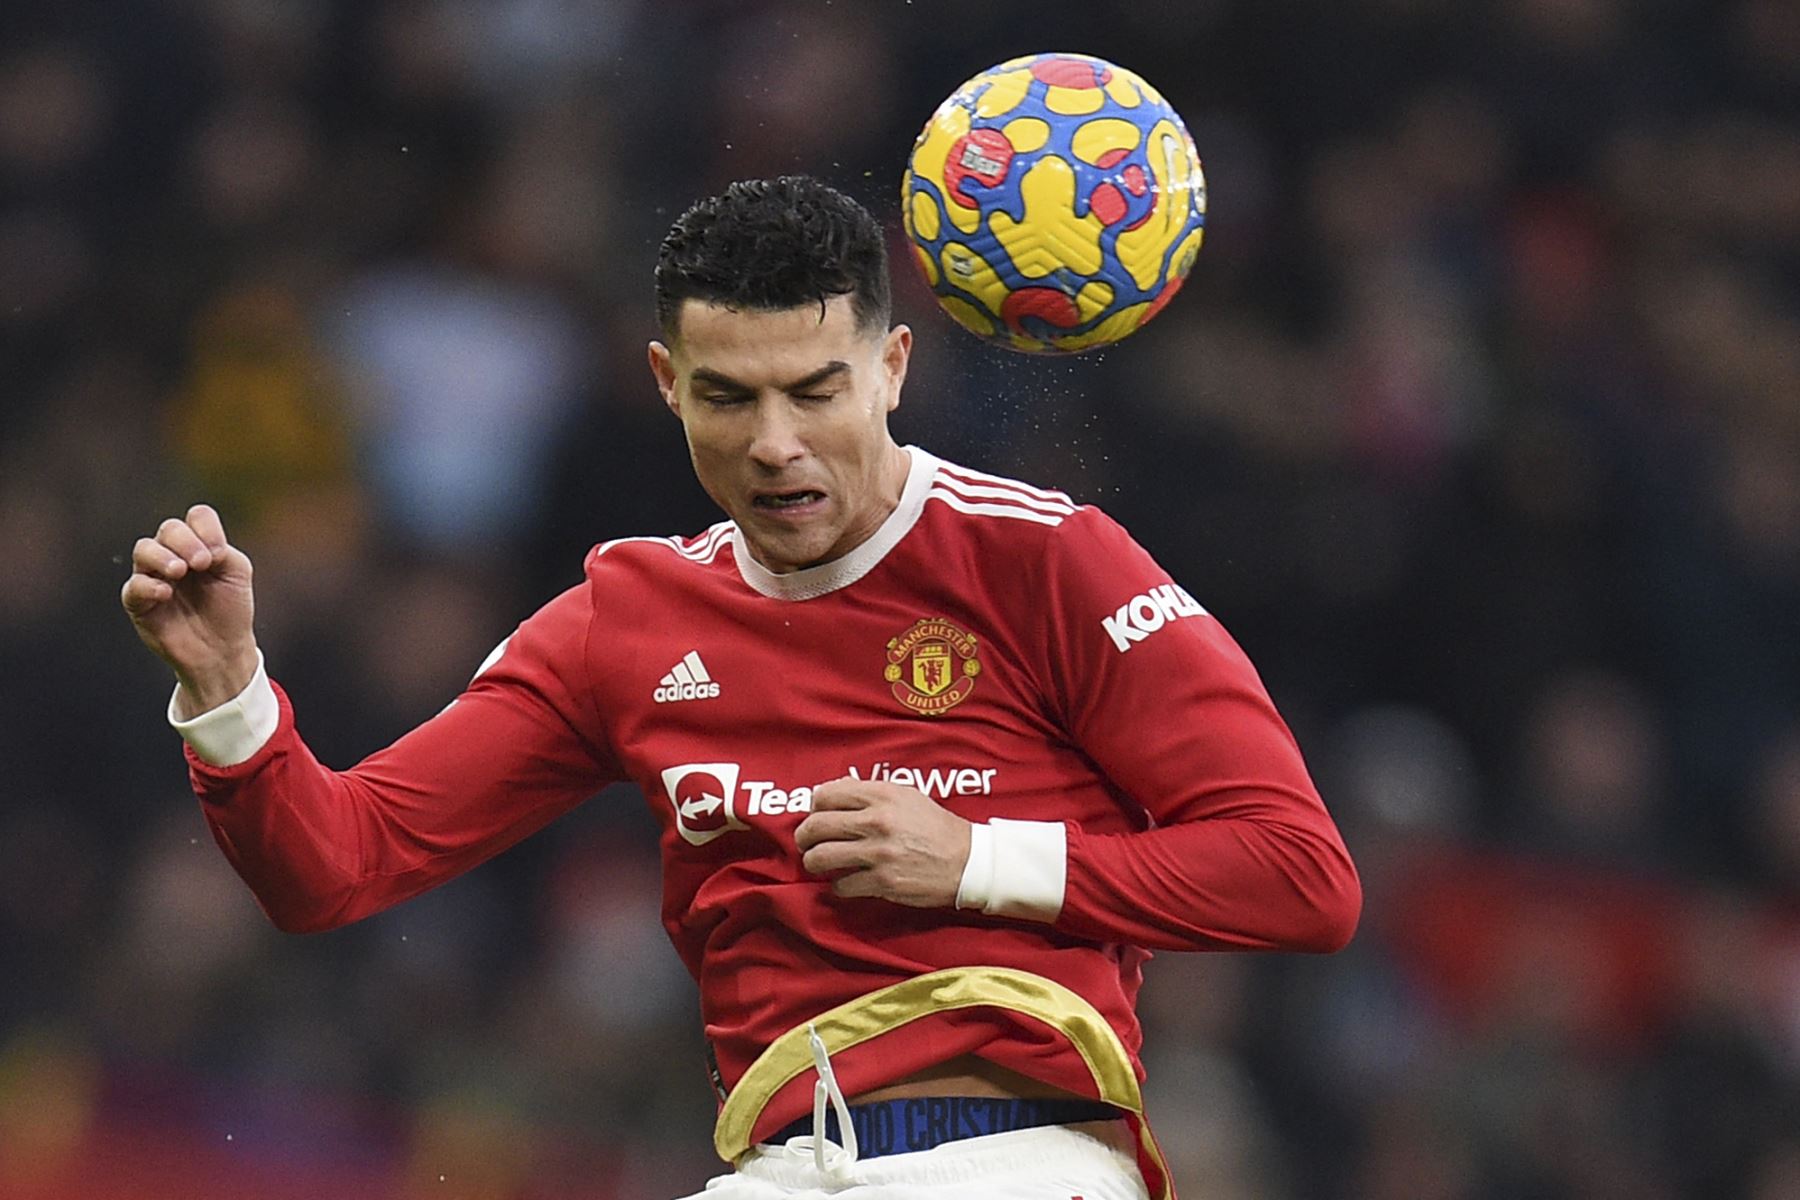 El delantero portugués del Manchester United, Cristiano Ronaldo, salta para cabecear el balón durante el partido de la Premier League. Foto: AFP